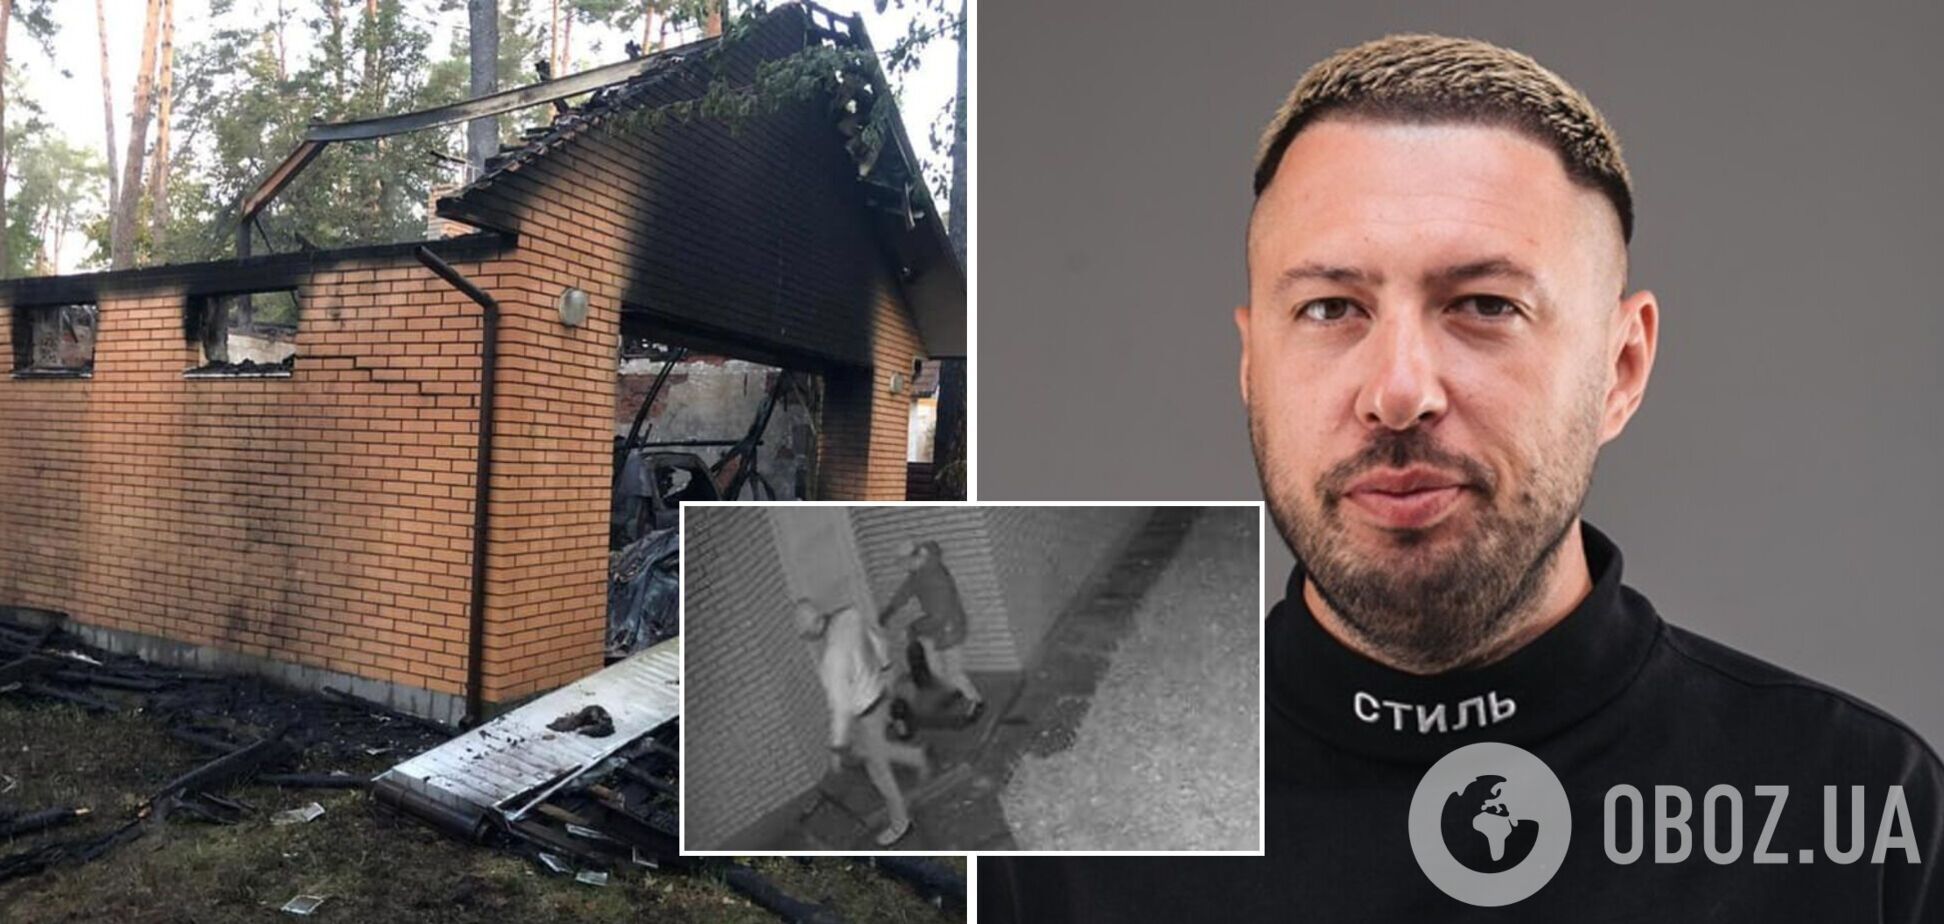 Поліція заарештувала підпалювачів будинку відомого блогера-мільйонника. Фото і відео